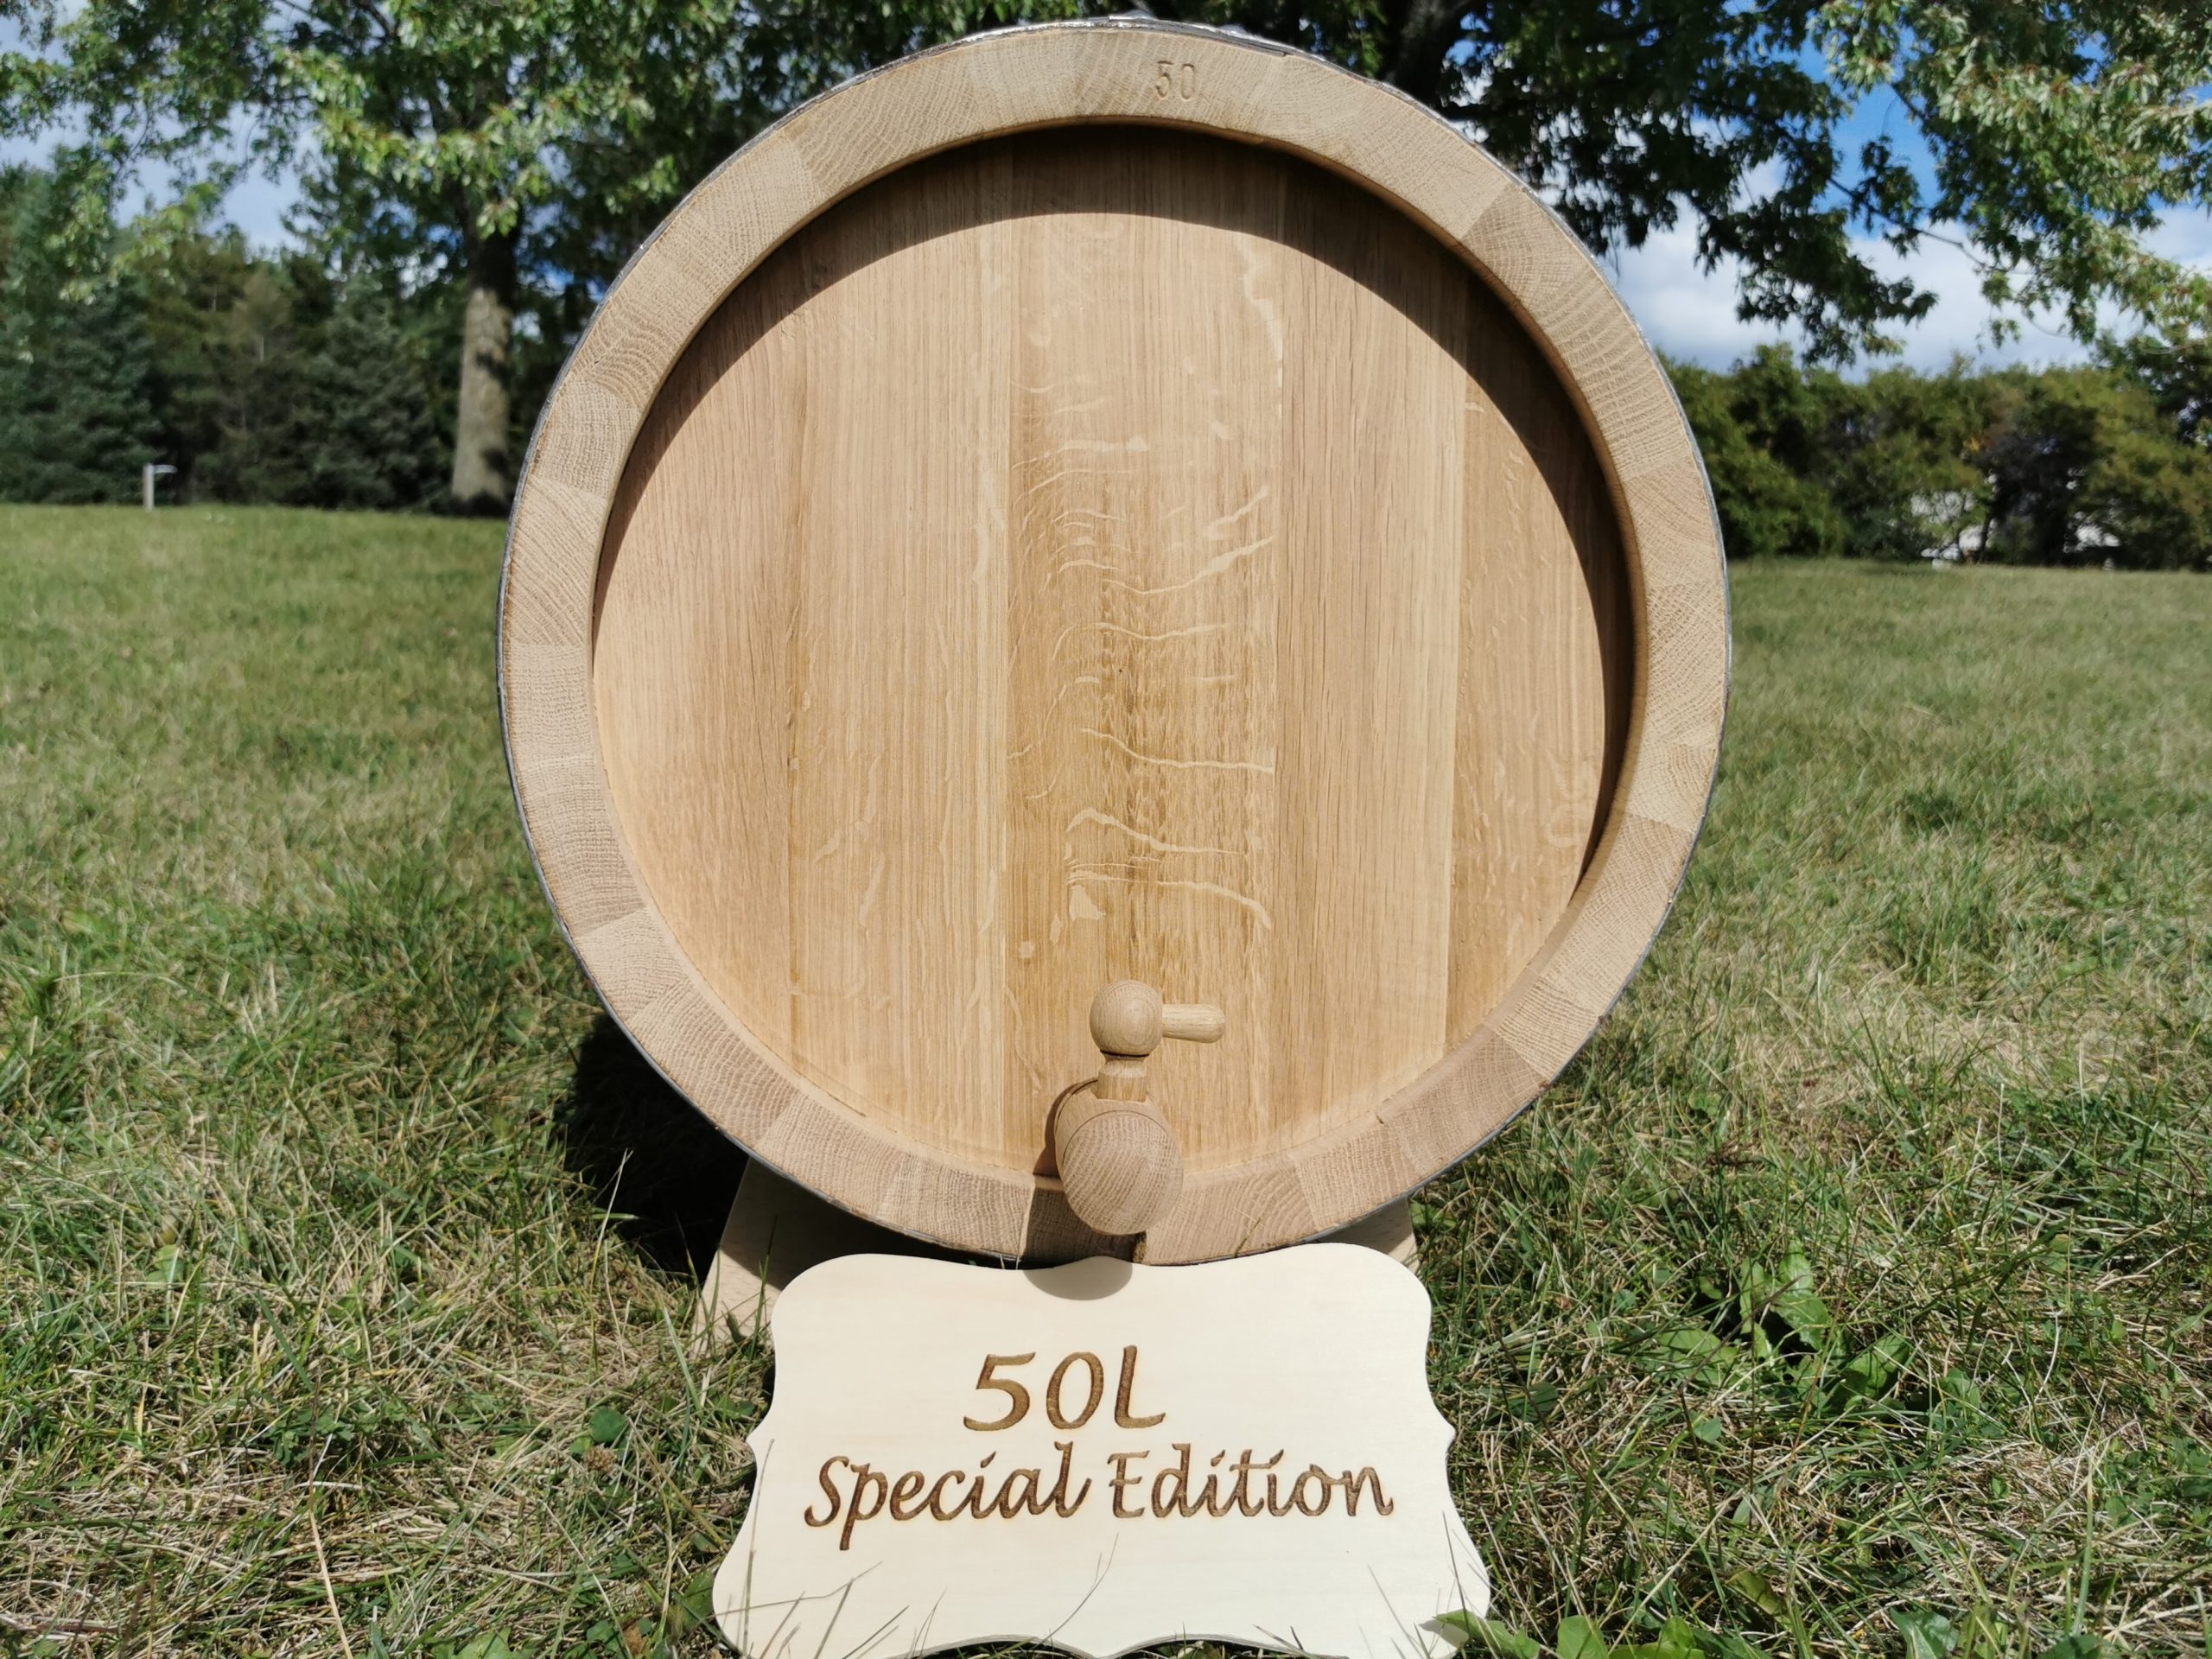 Special Edition Oak barrel 50L